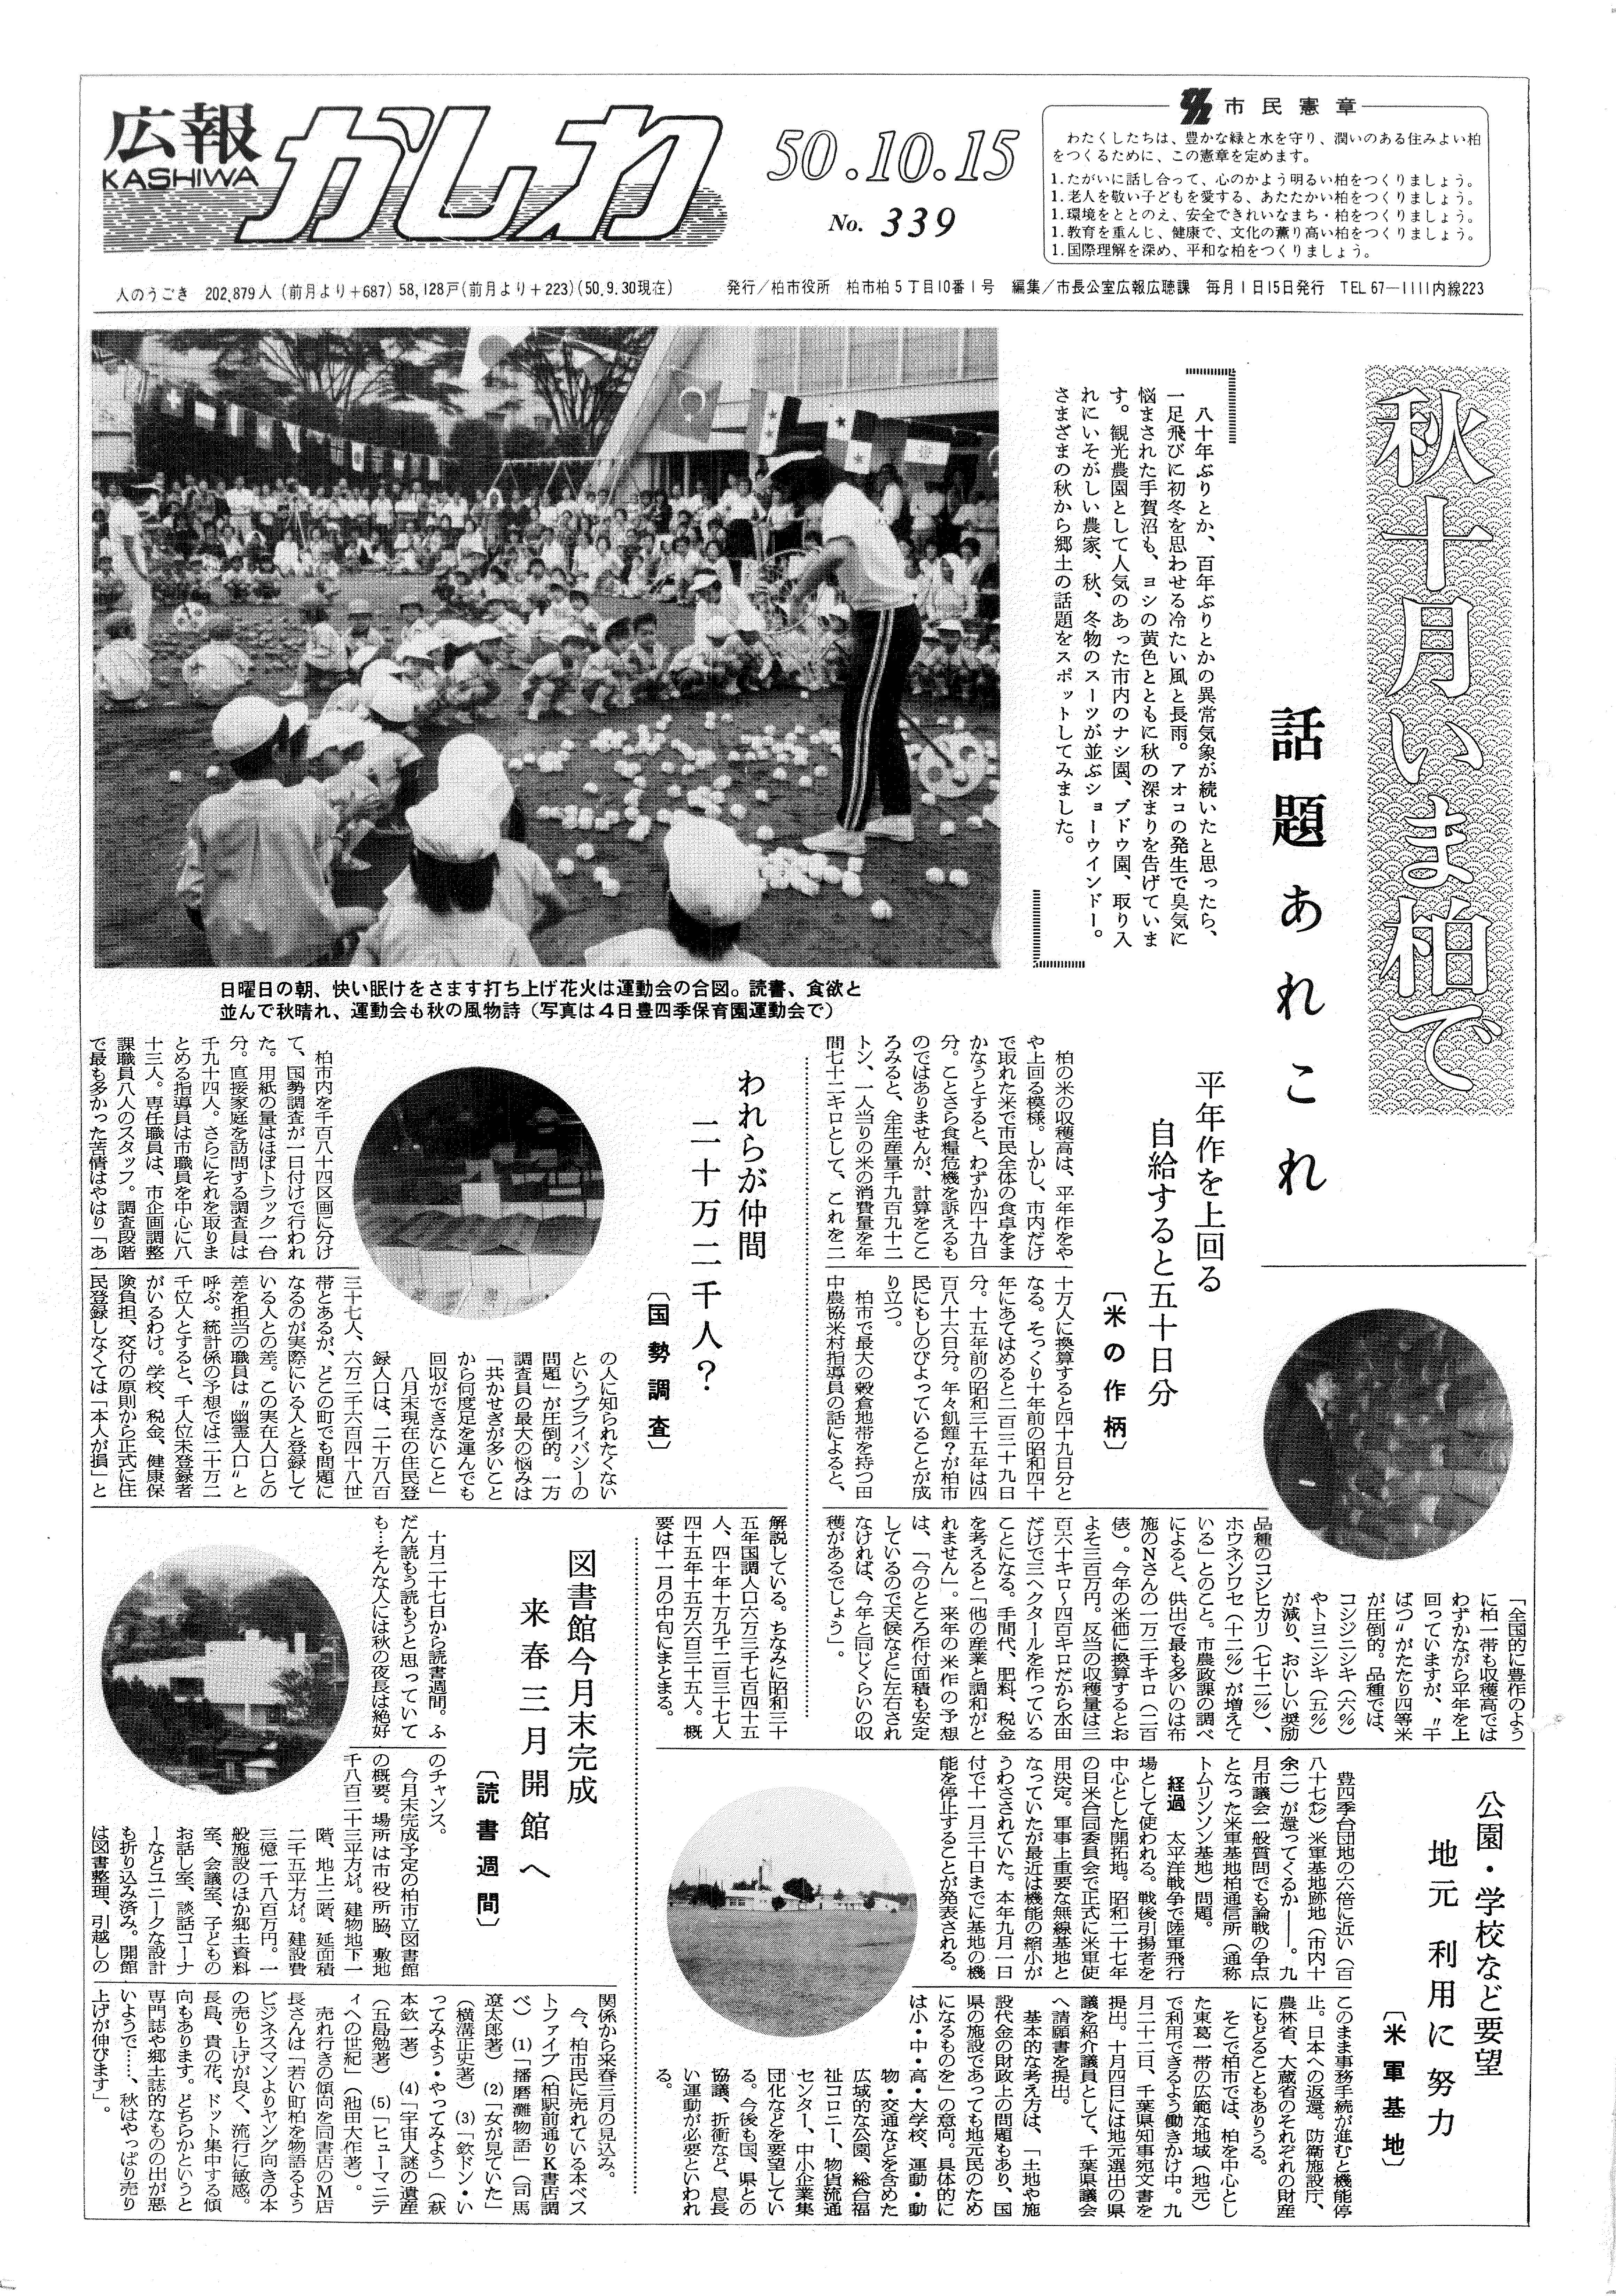 広報かしわ　昭和50年10月15日発行　339号